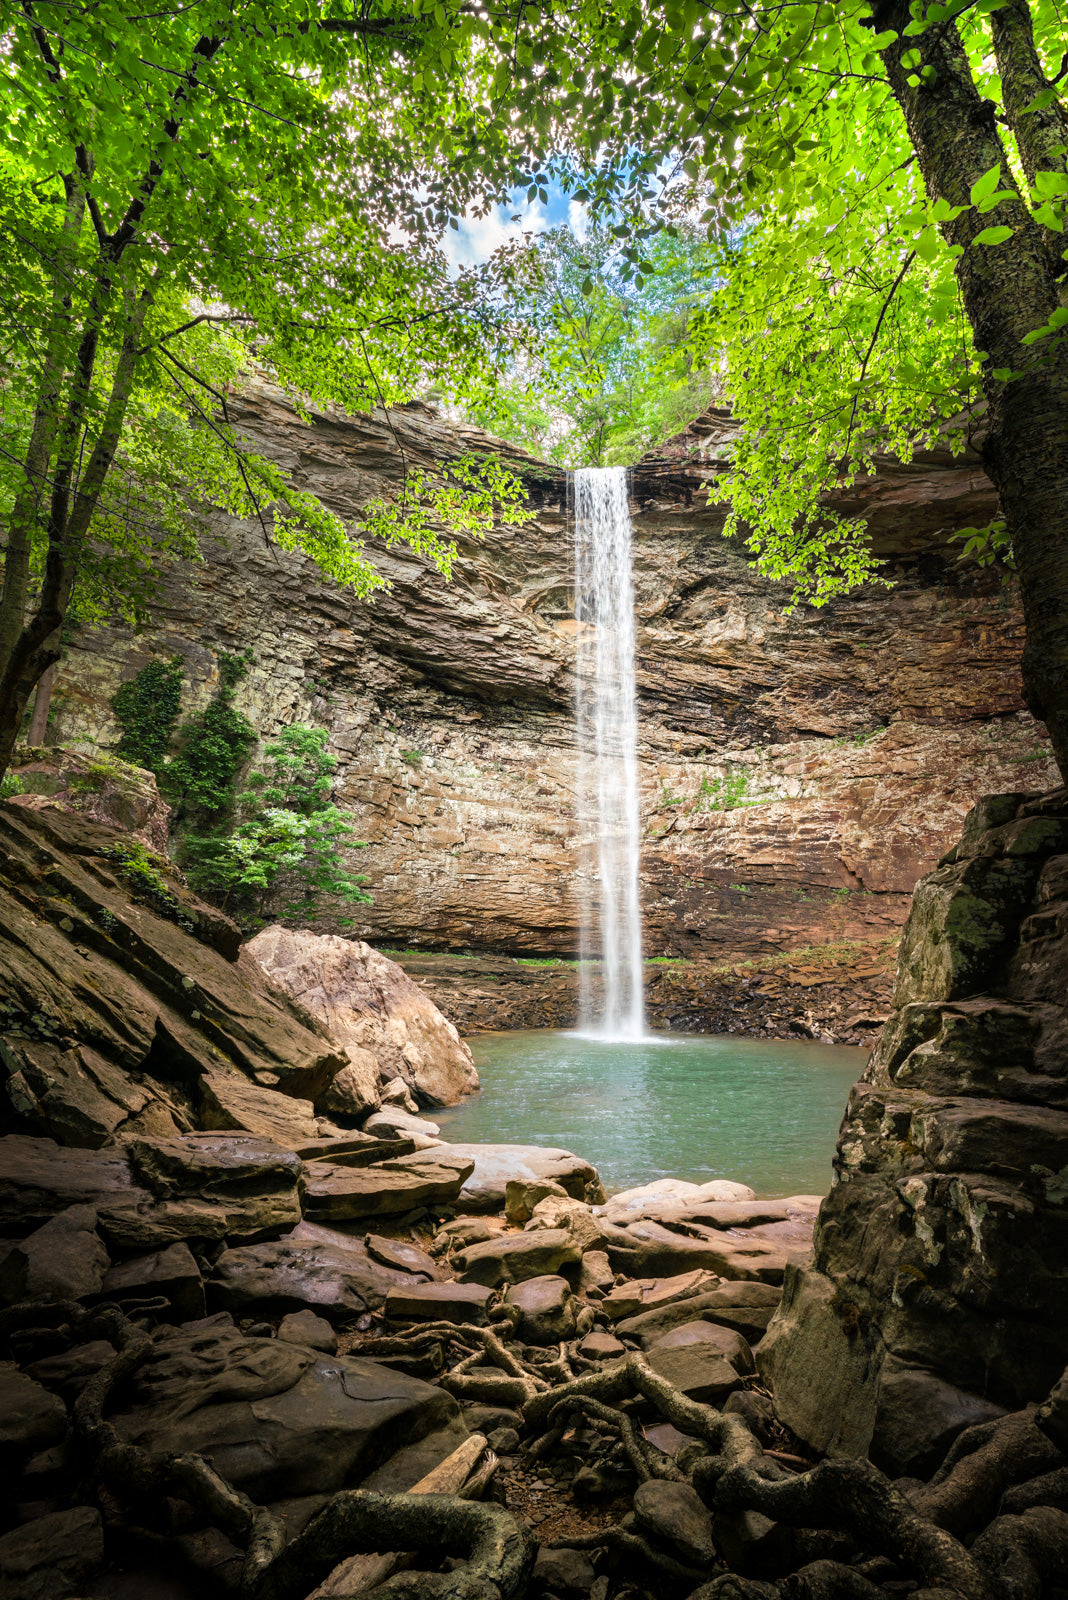 "Oasis" - Ozone Waterfall in Cumberland, TN